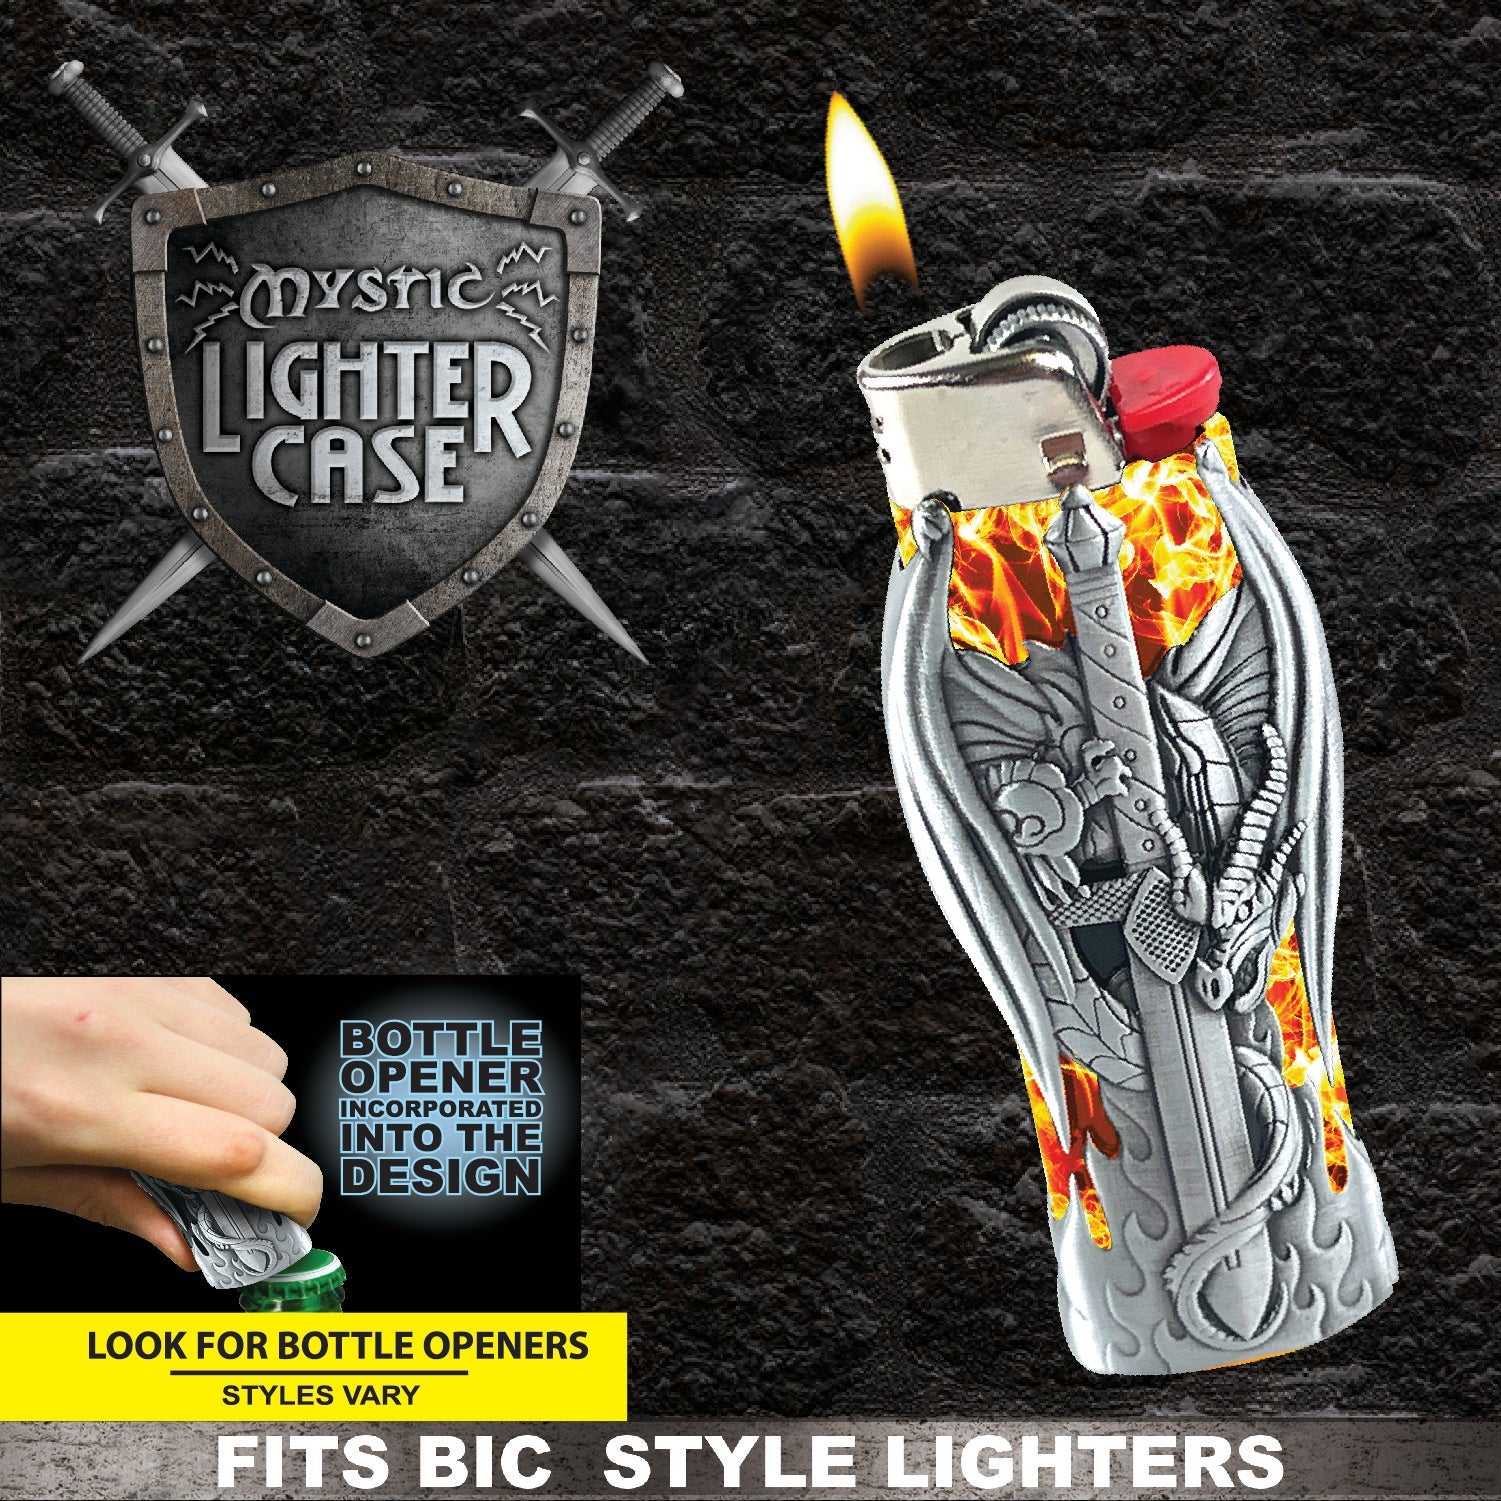 Lighter Case and Bottle Opener